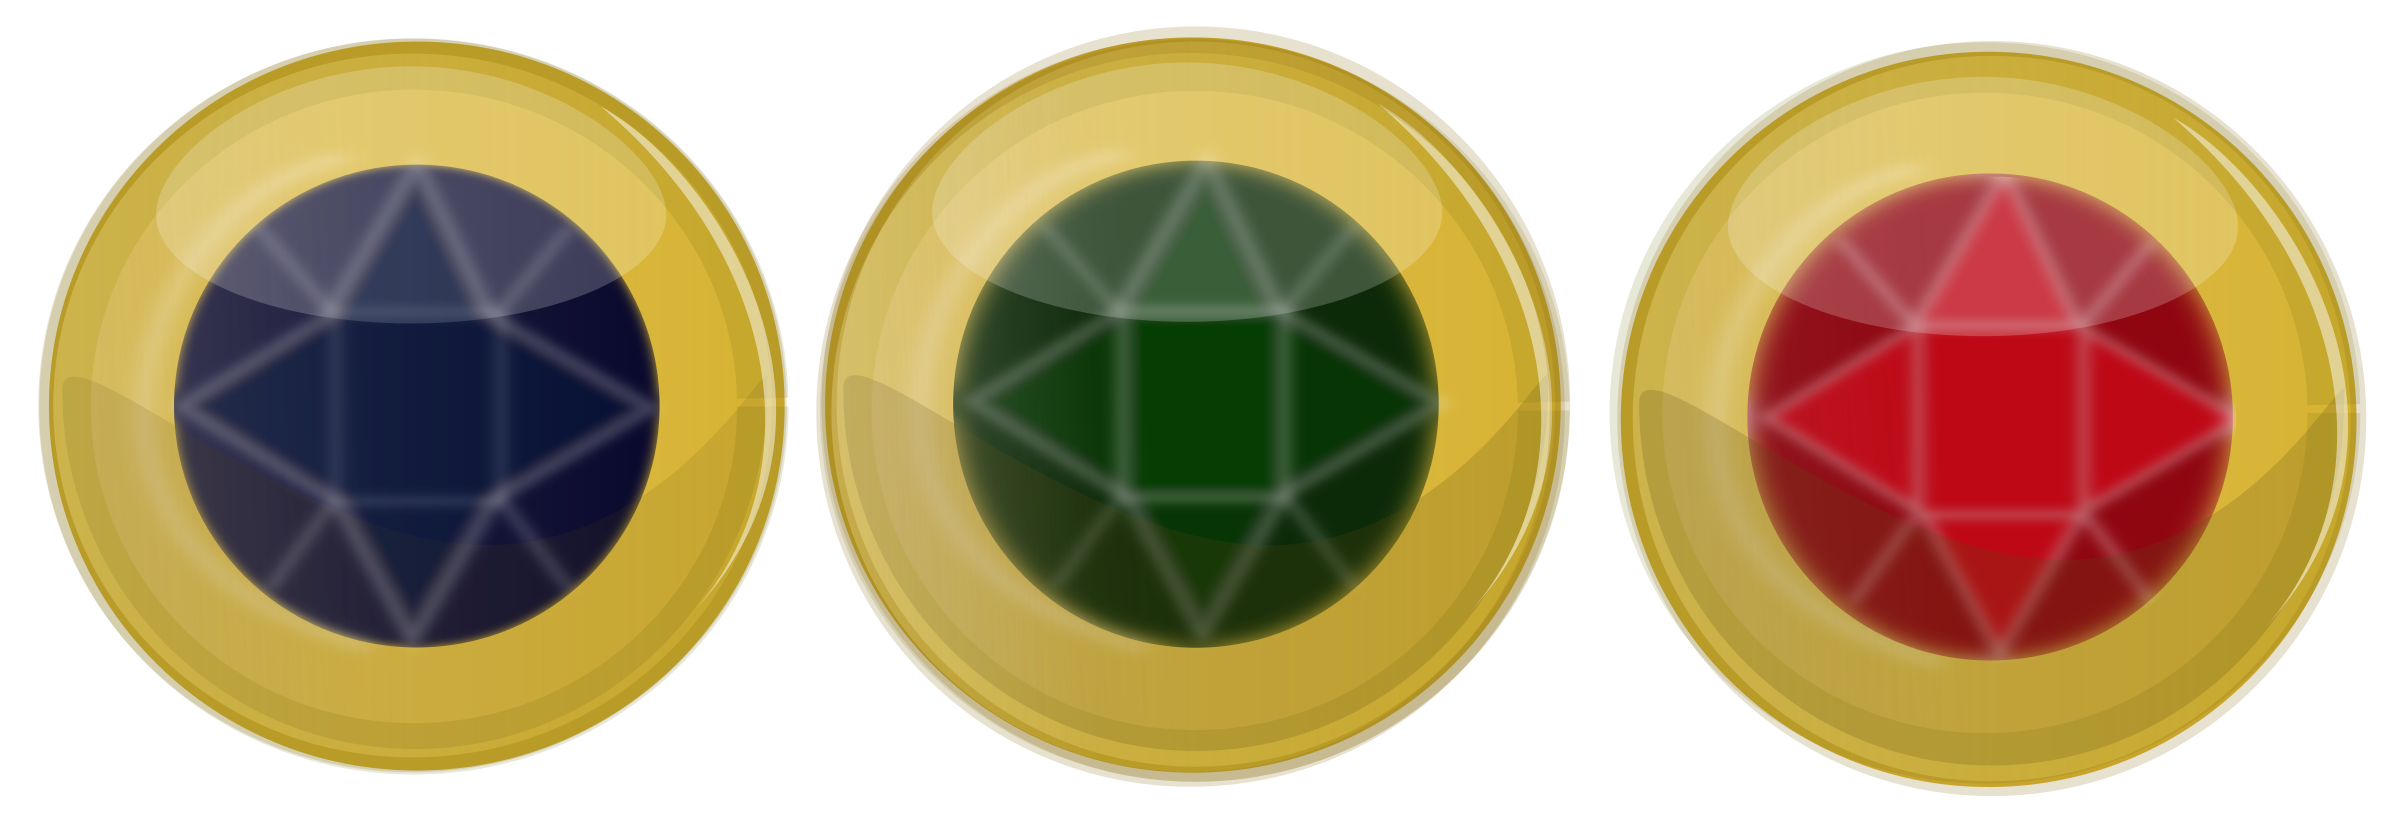 jewel clipart green jewel